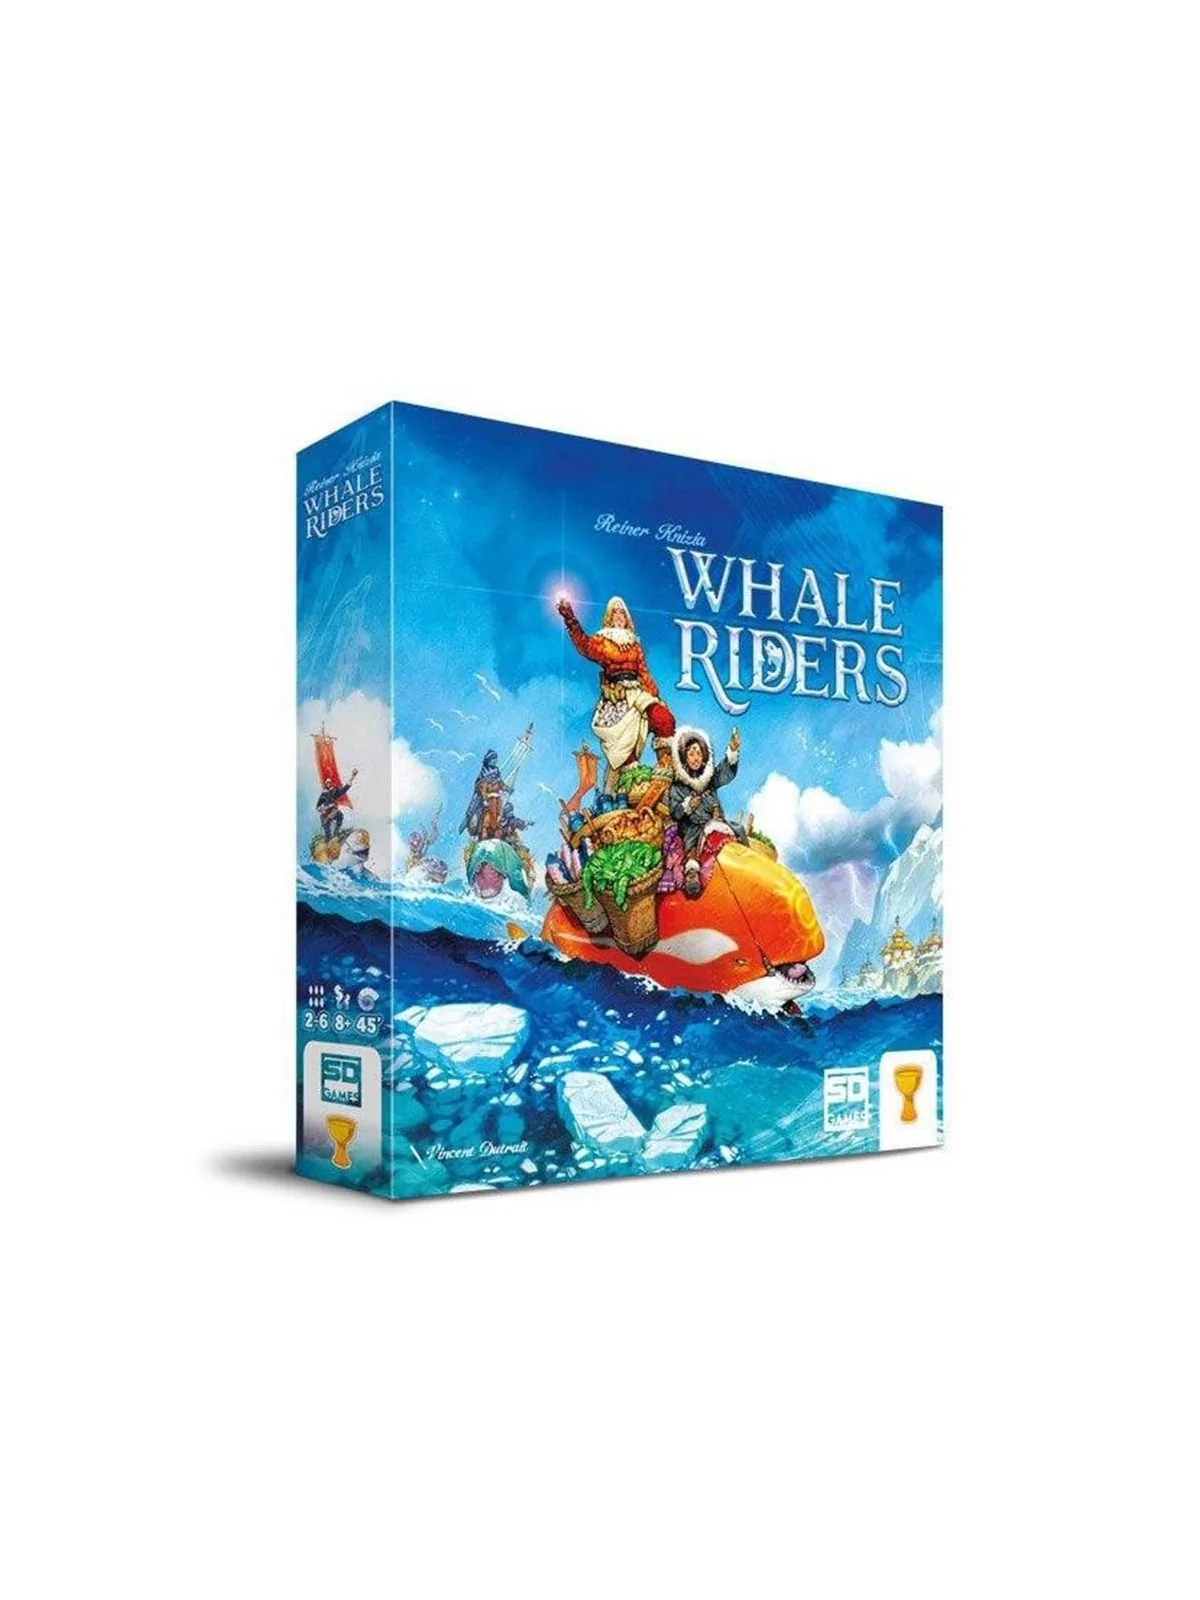 Comprar Whale Riders barato al mejor precio 26,96 € de SD GAMES